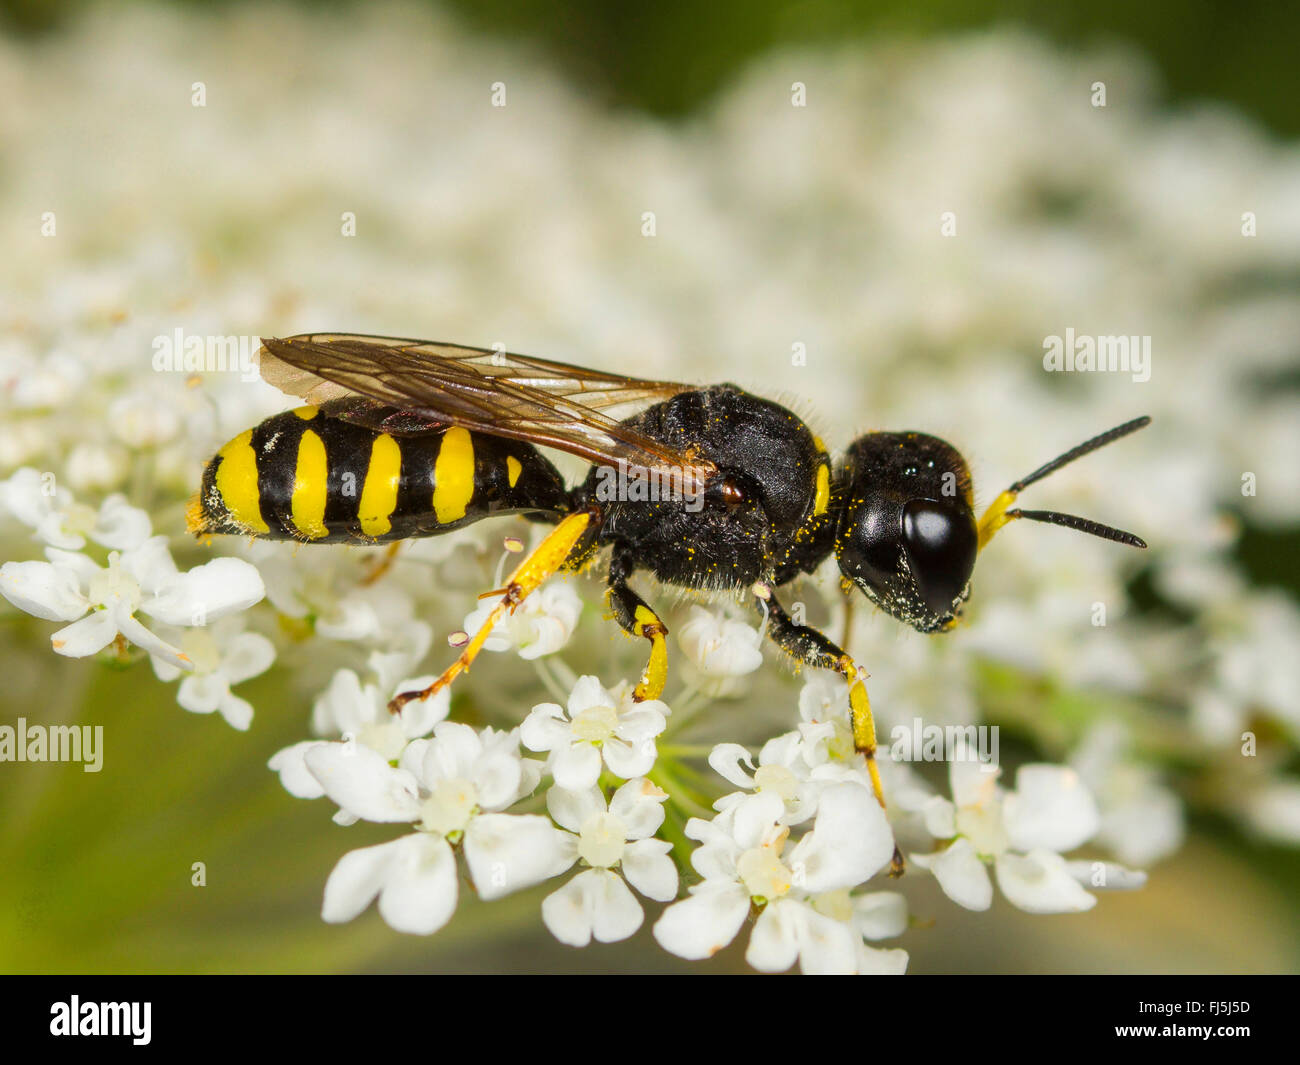 Digger wasp (Ectemnius lapidarius), femme qui se nourrissent de la Carotte sauvage (Daucus carota), Allemagne Banque D'Images